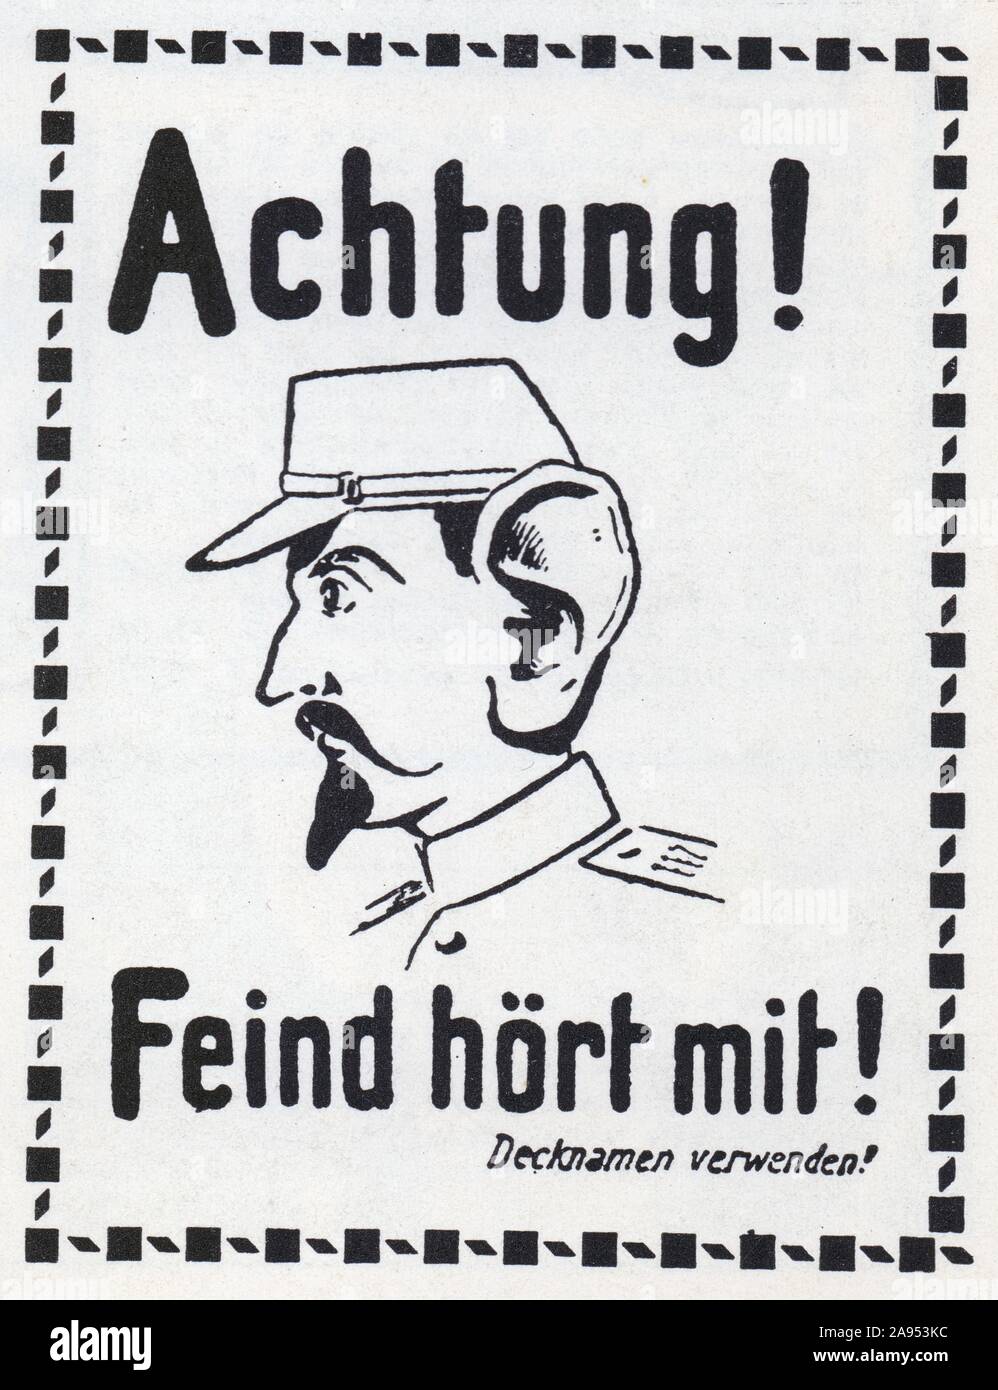 Affiche : attenzione ! L'ennemi vous écoute ! Distribuée sur le front allemand pendant la première guerre mondiale Foto Stock